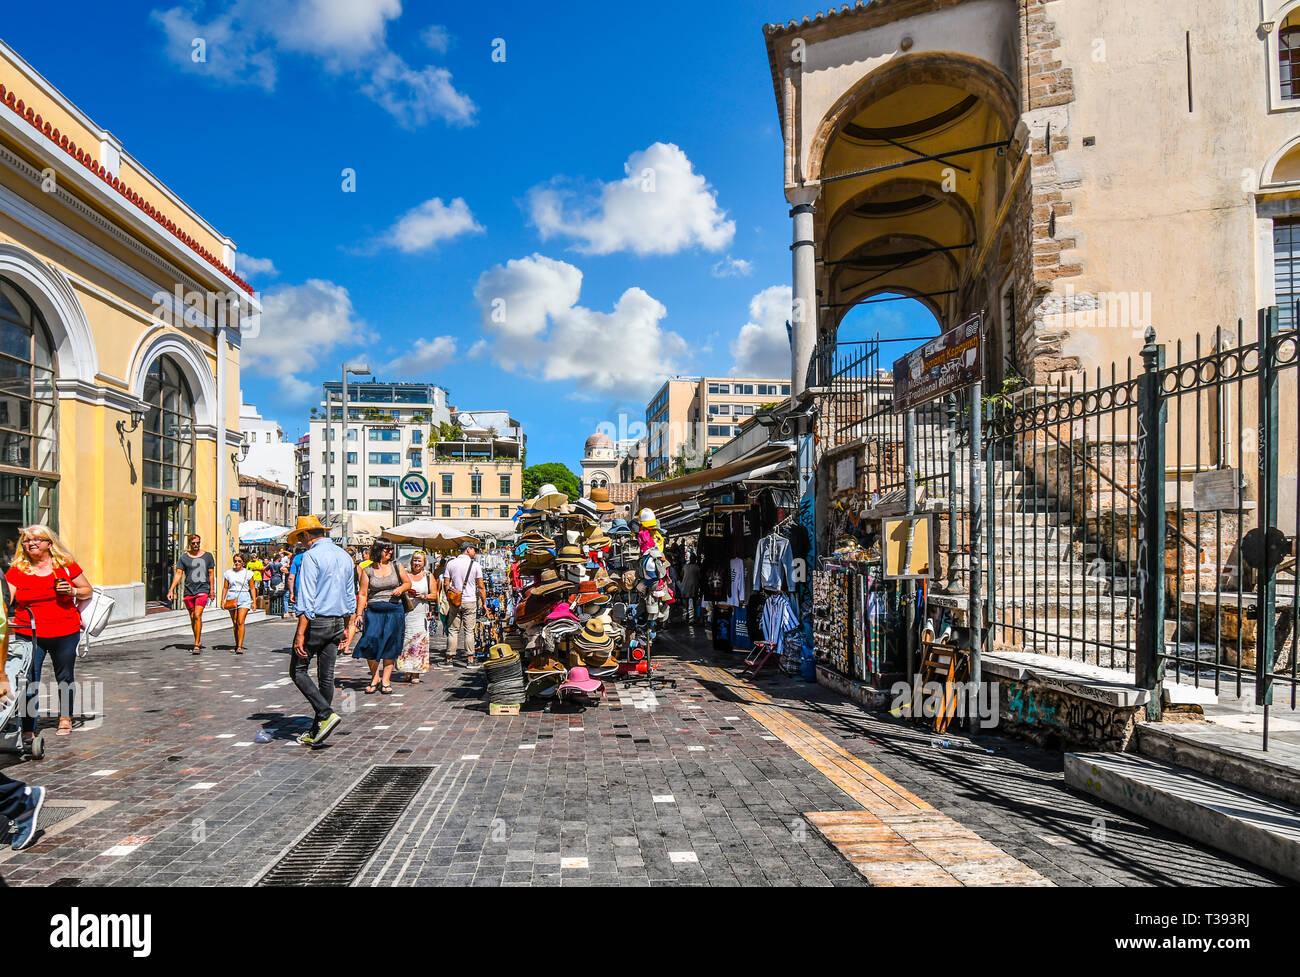 Tienda de turistas y paseos turísticos las tiendas, mercados y puestos de venta de regalos en la plaza Monastiraki en un día soleado en Atenas, Grecia. Foto de stock